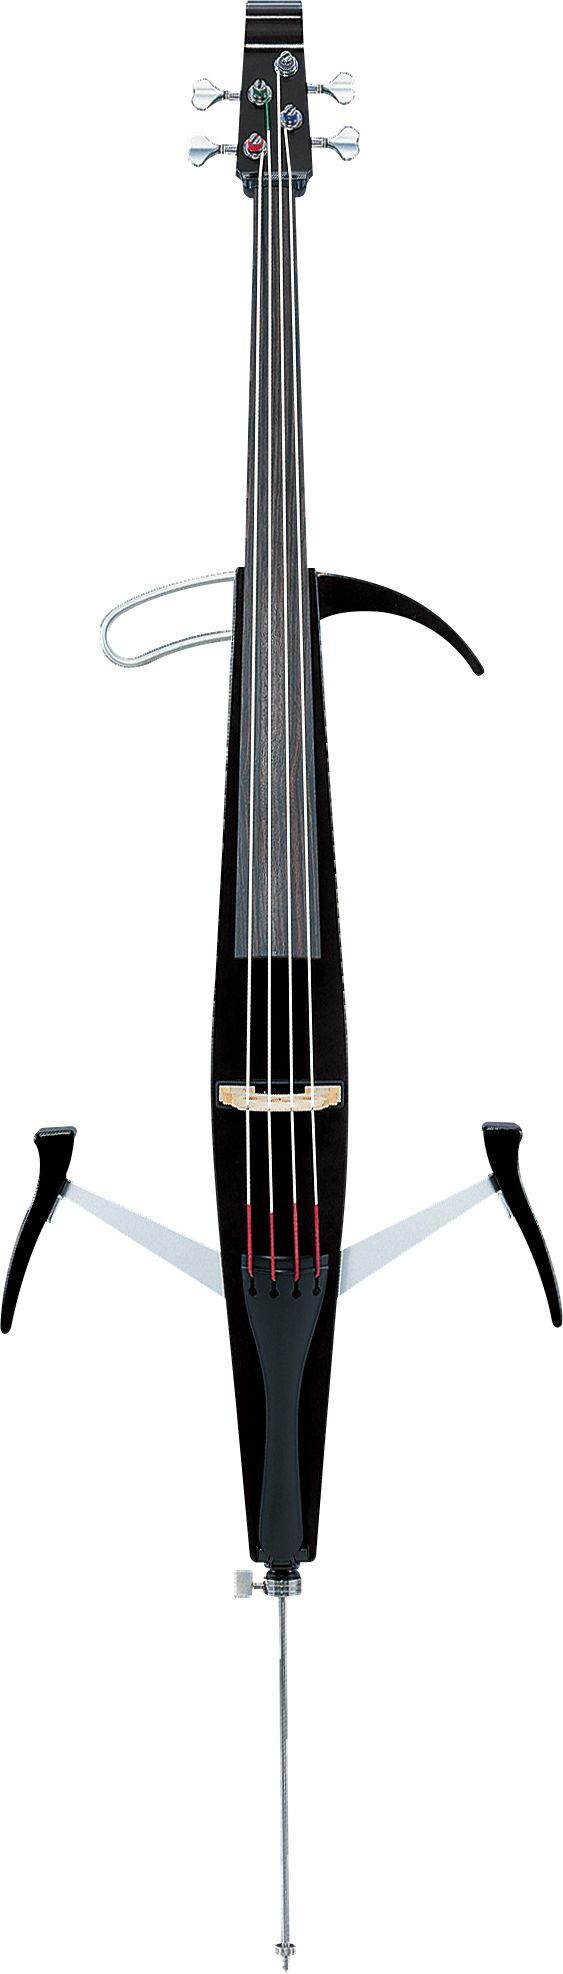 Yamaha Svc-50 Silent Cello - Violoncelo eléctrico - Main picture